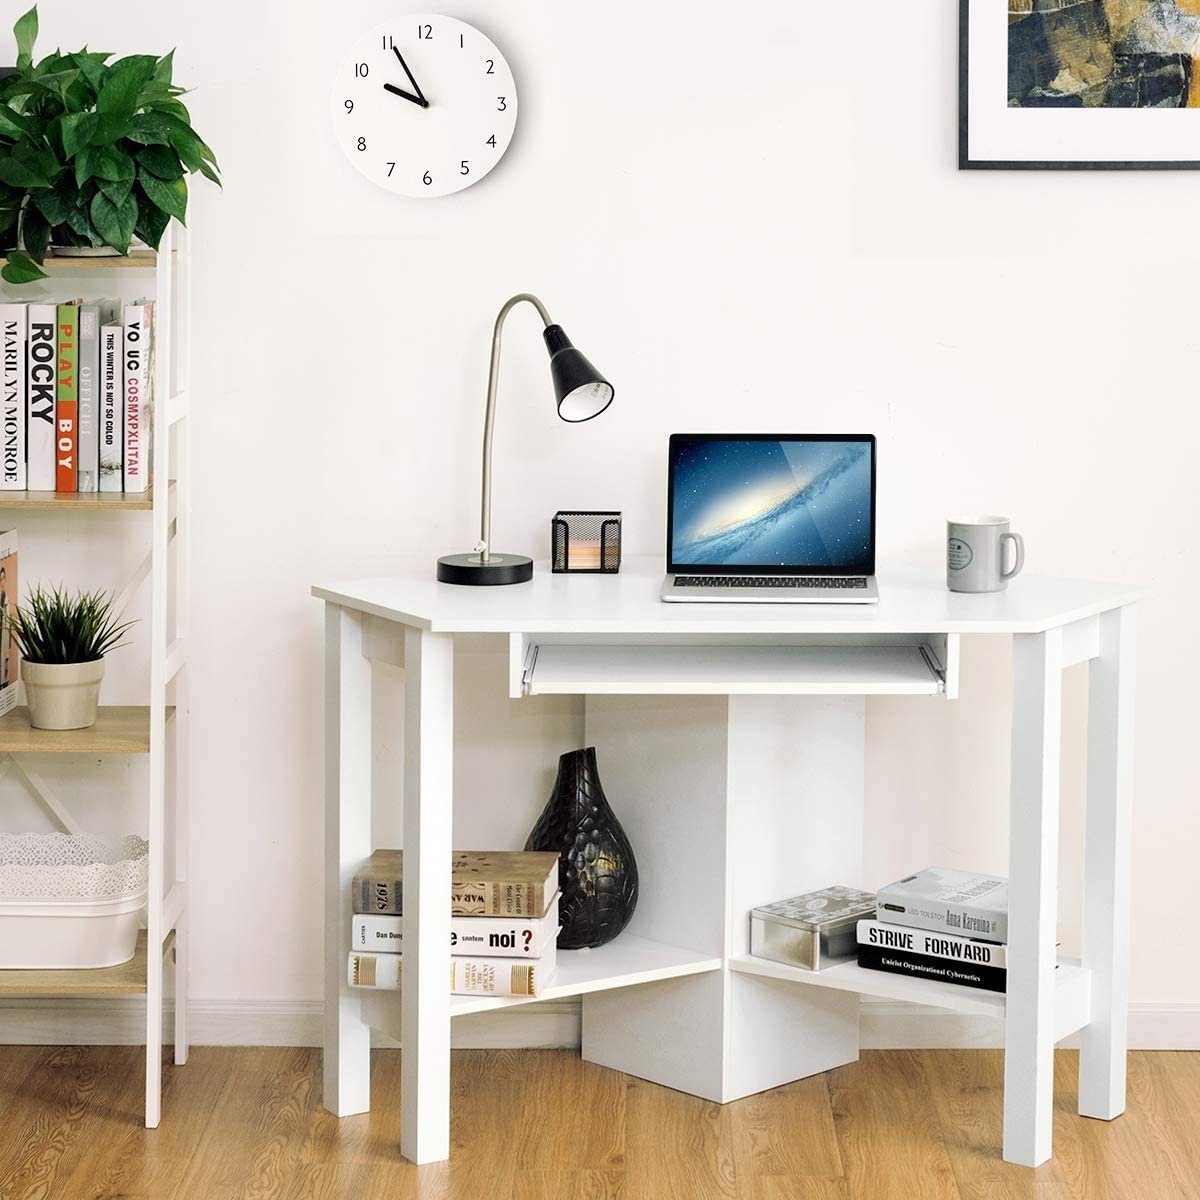 Tastaturablage&Ablagen, COSTWAY ausziehbarer Weiß Schreibtisch, mit 120x60x77cm